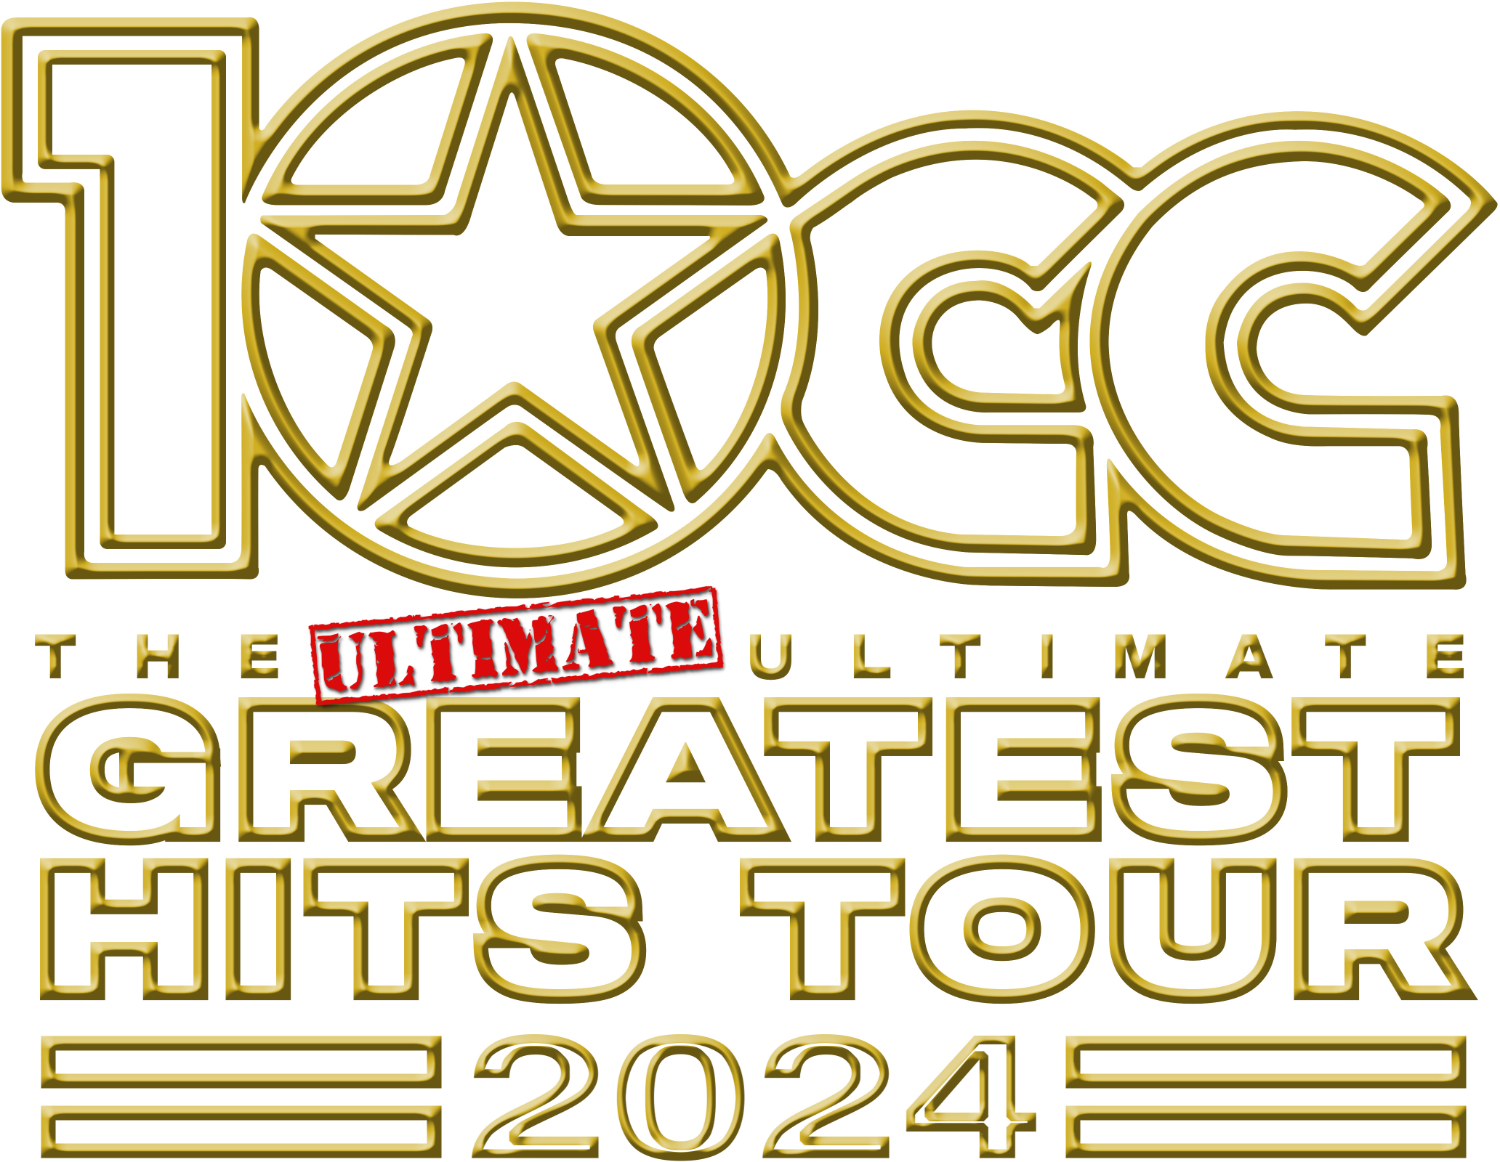 10cc tour 2022 deutschland